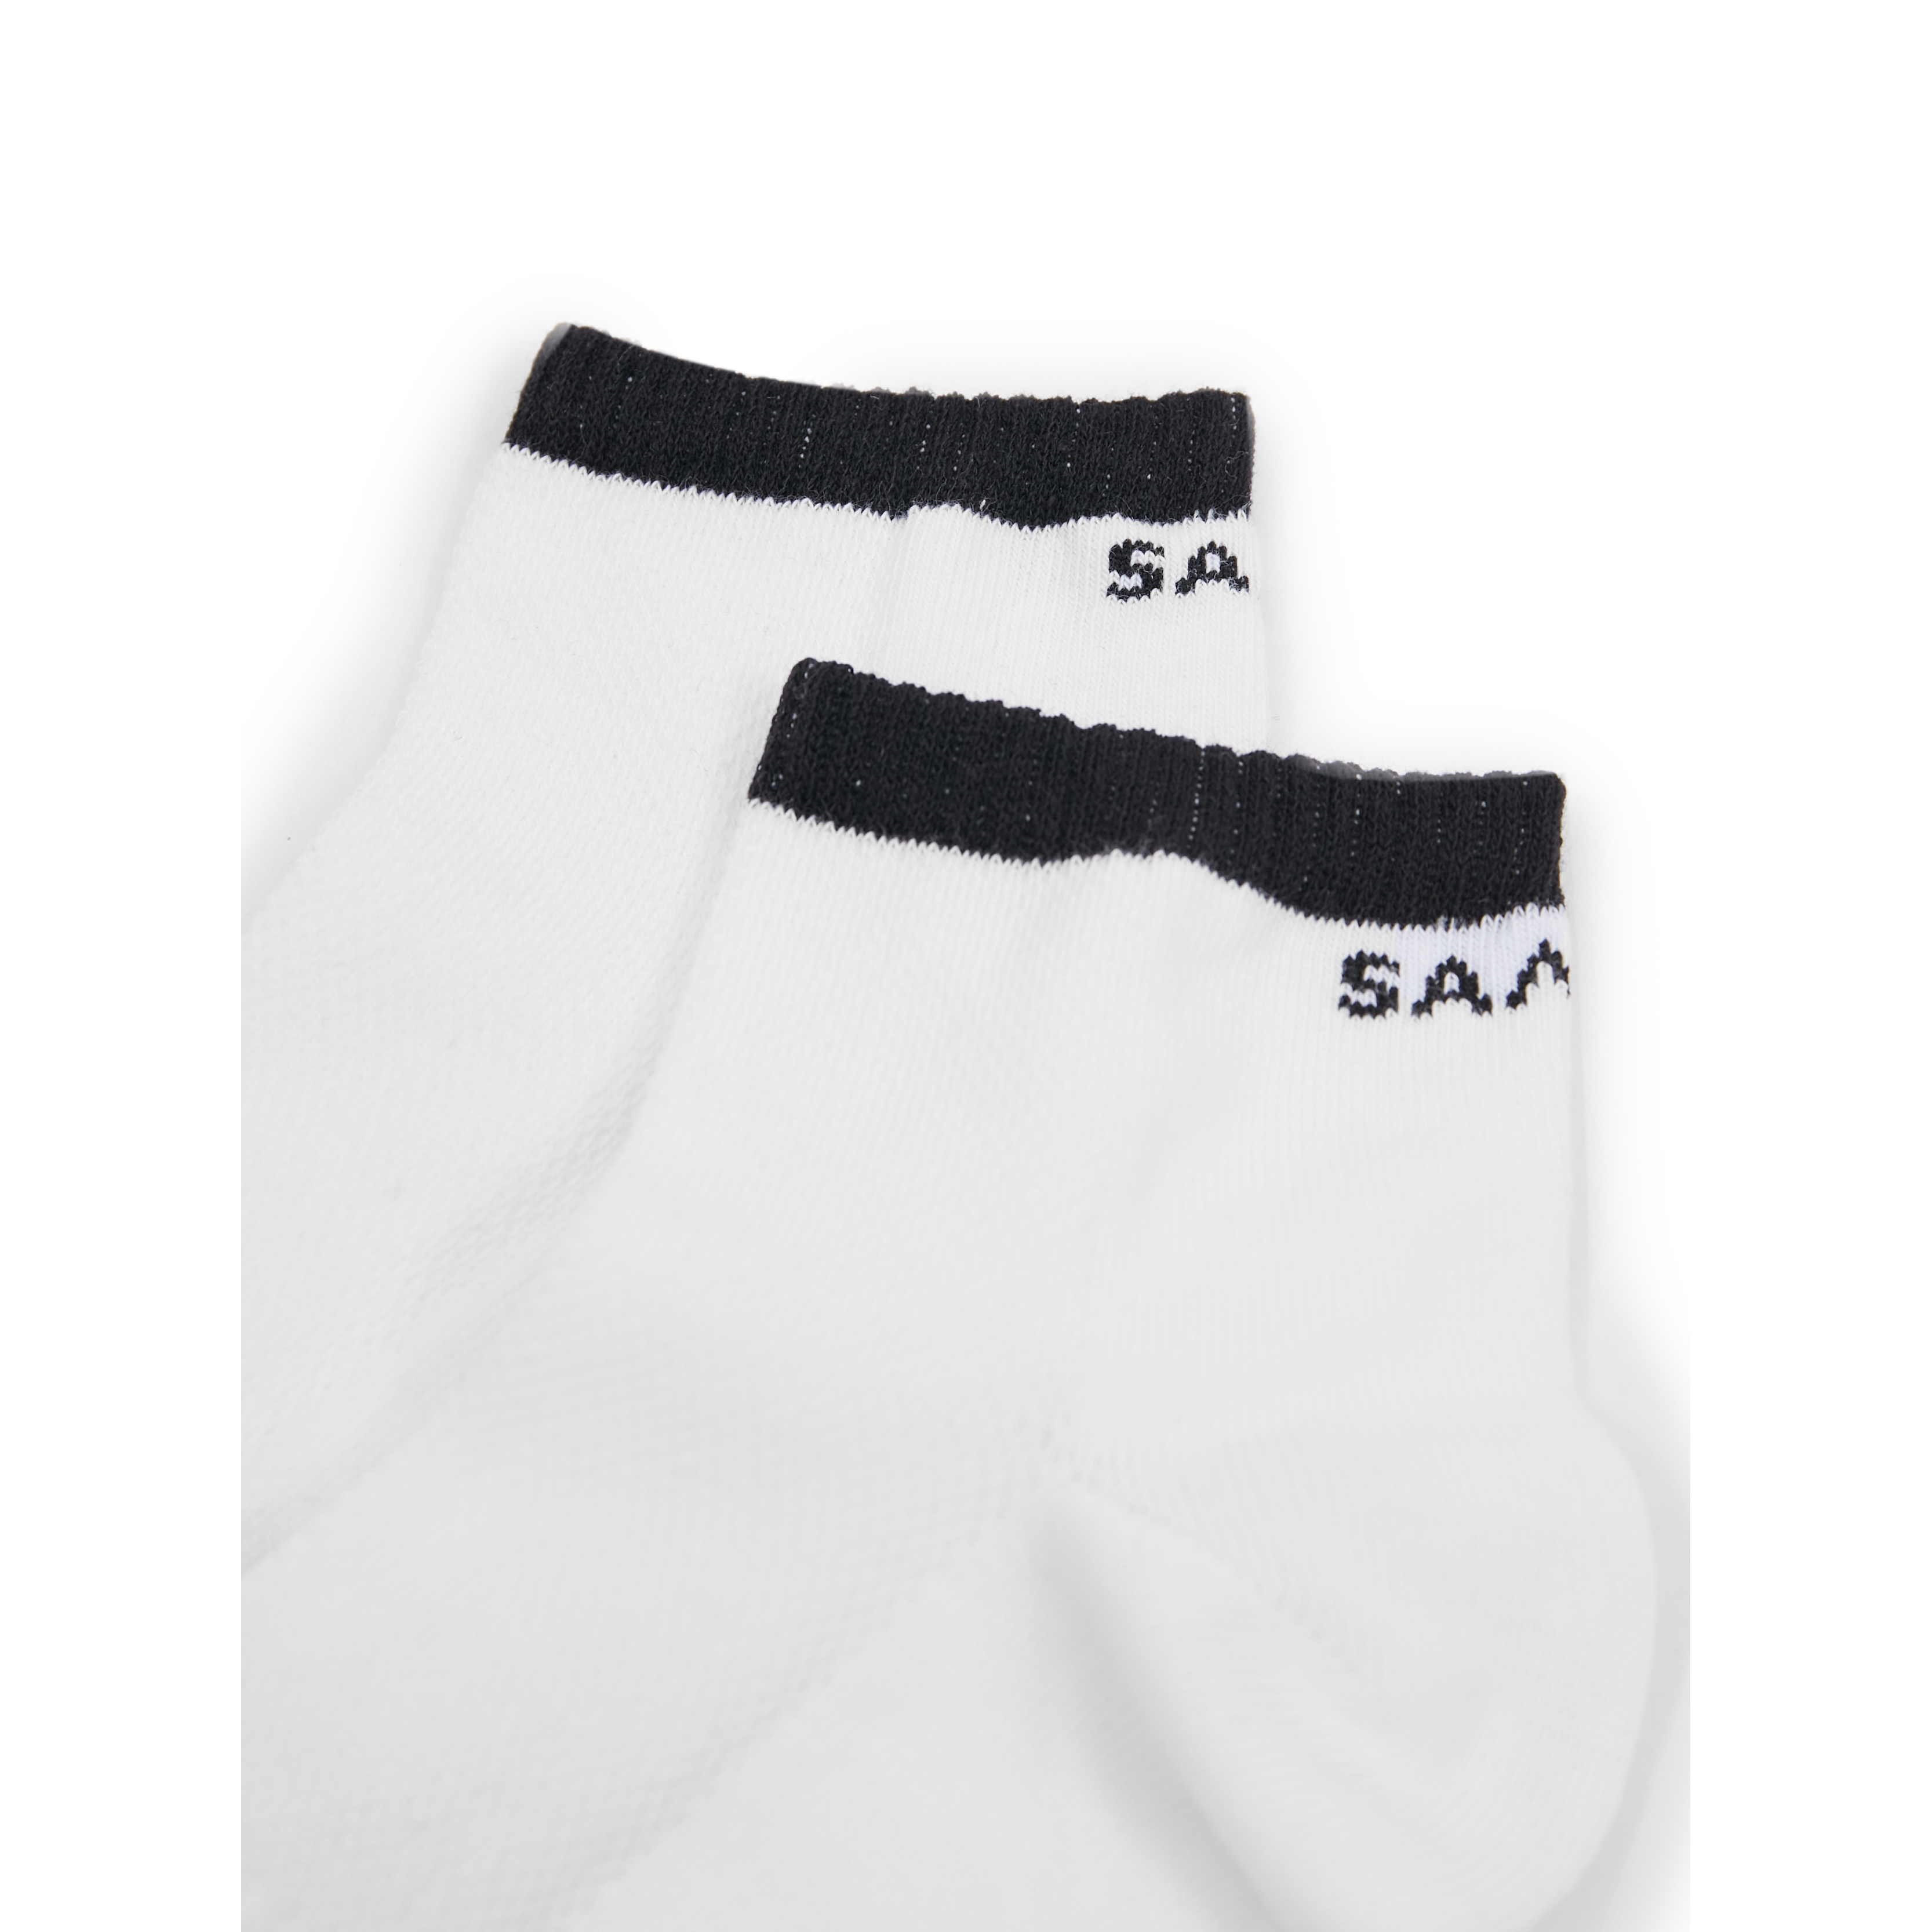 SAM73 Napier Socks - Unisex